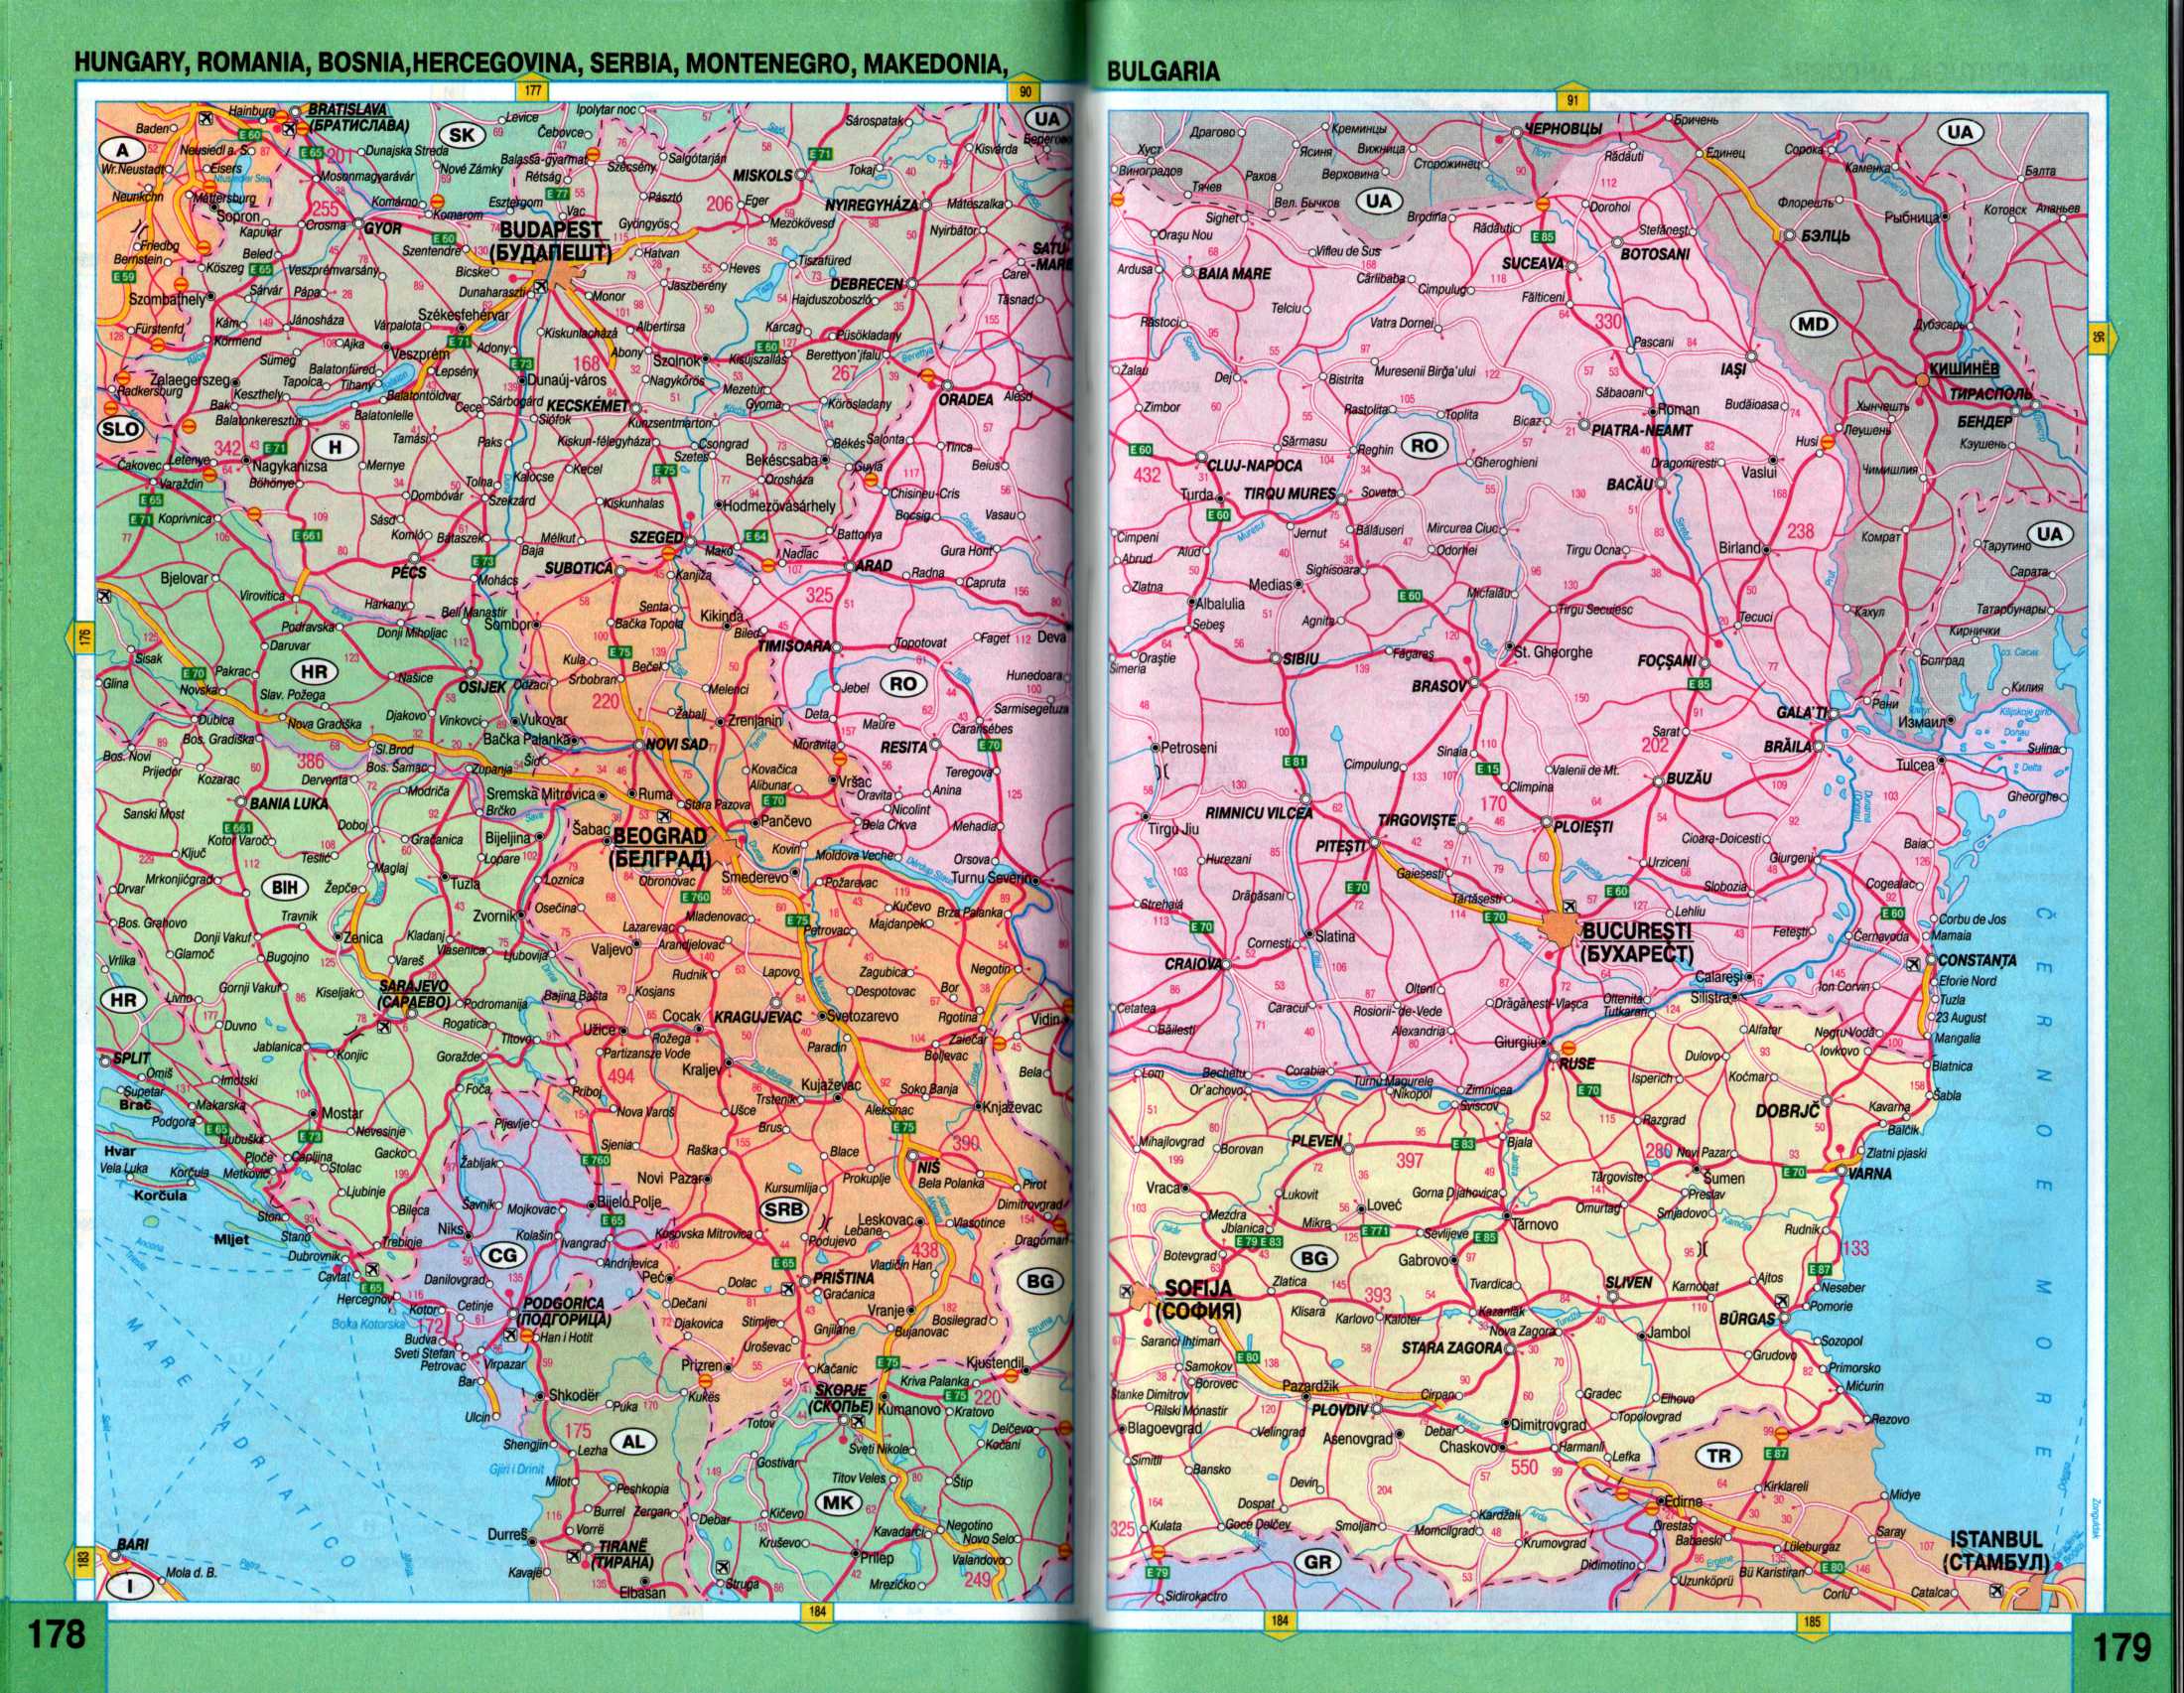 Сербия на карта Европы. Автомобильная карта Сербии, Черногории, Румынии и Болгарии из атласа Европы 2009 года, A0 - 